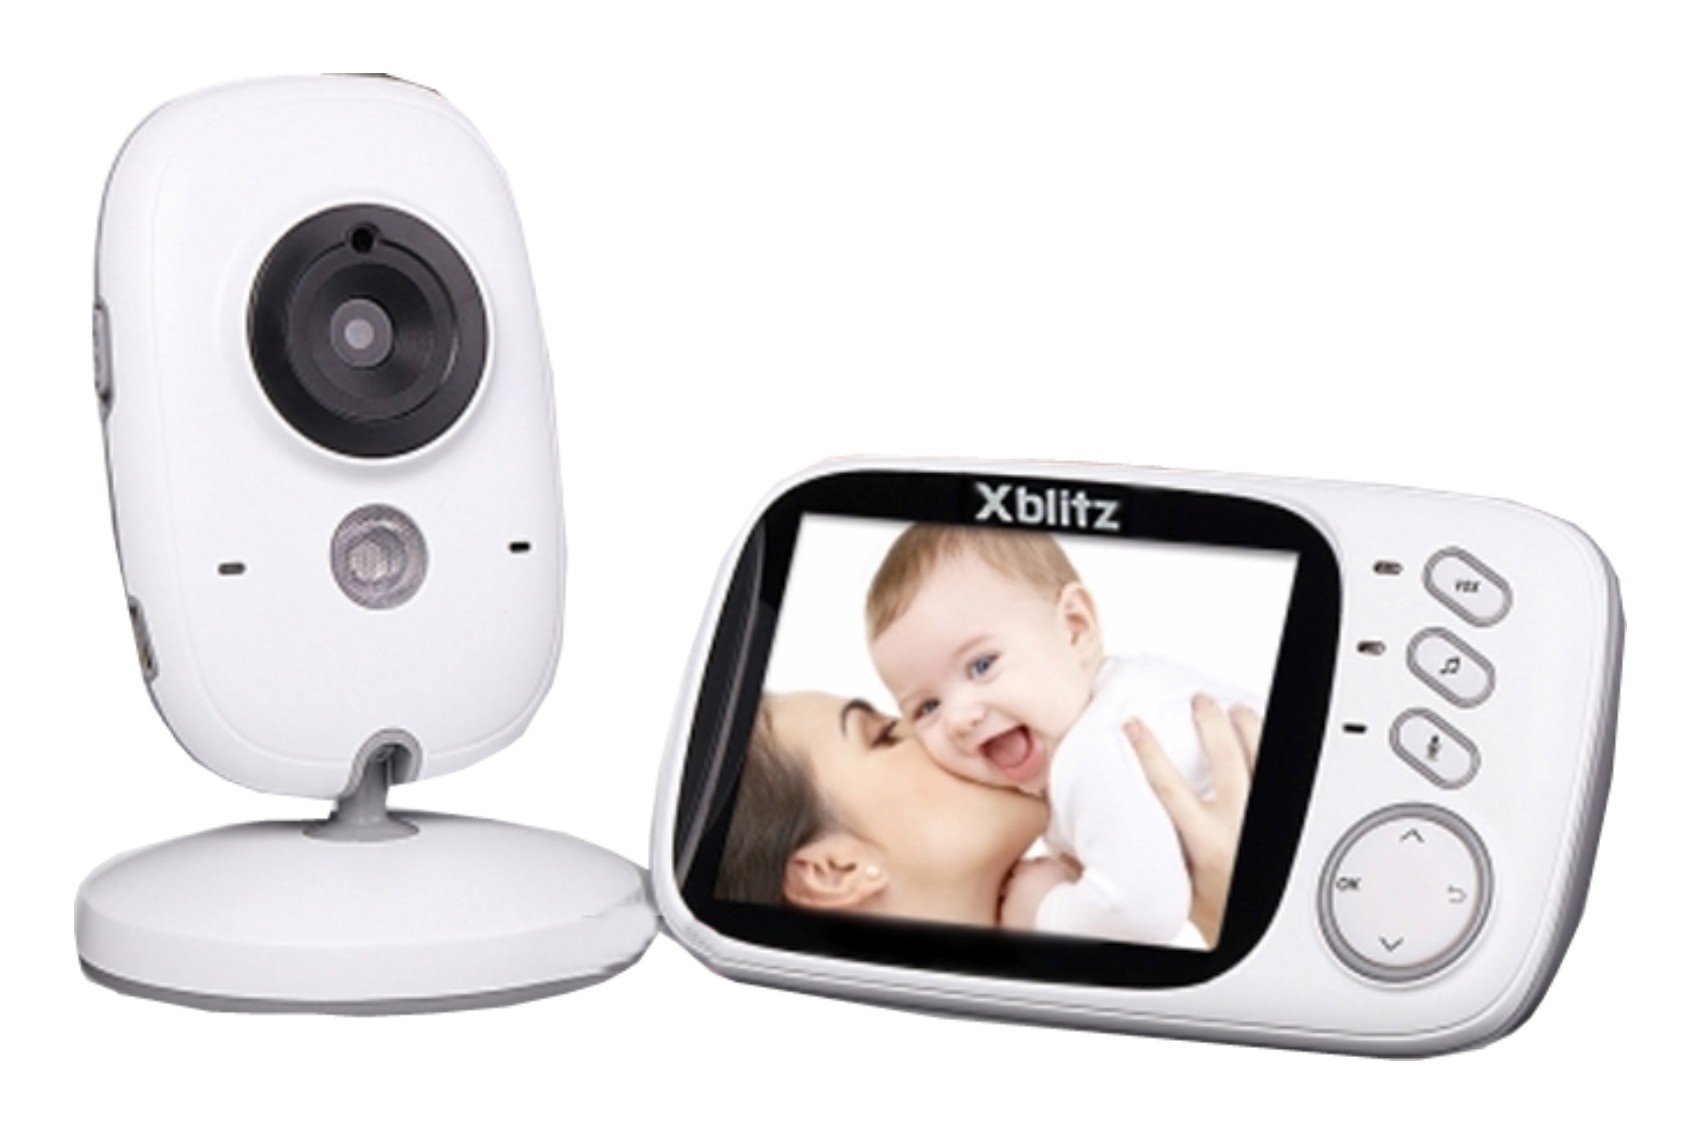 Xblitz Kinder elektronikus dadus babaőrző, vezeték nélküli, 2,4 GHZ, 3,2 hüvelykes TFT LCD képernyő, éjszakai látás, kétirányú kommunikáció, fehér